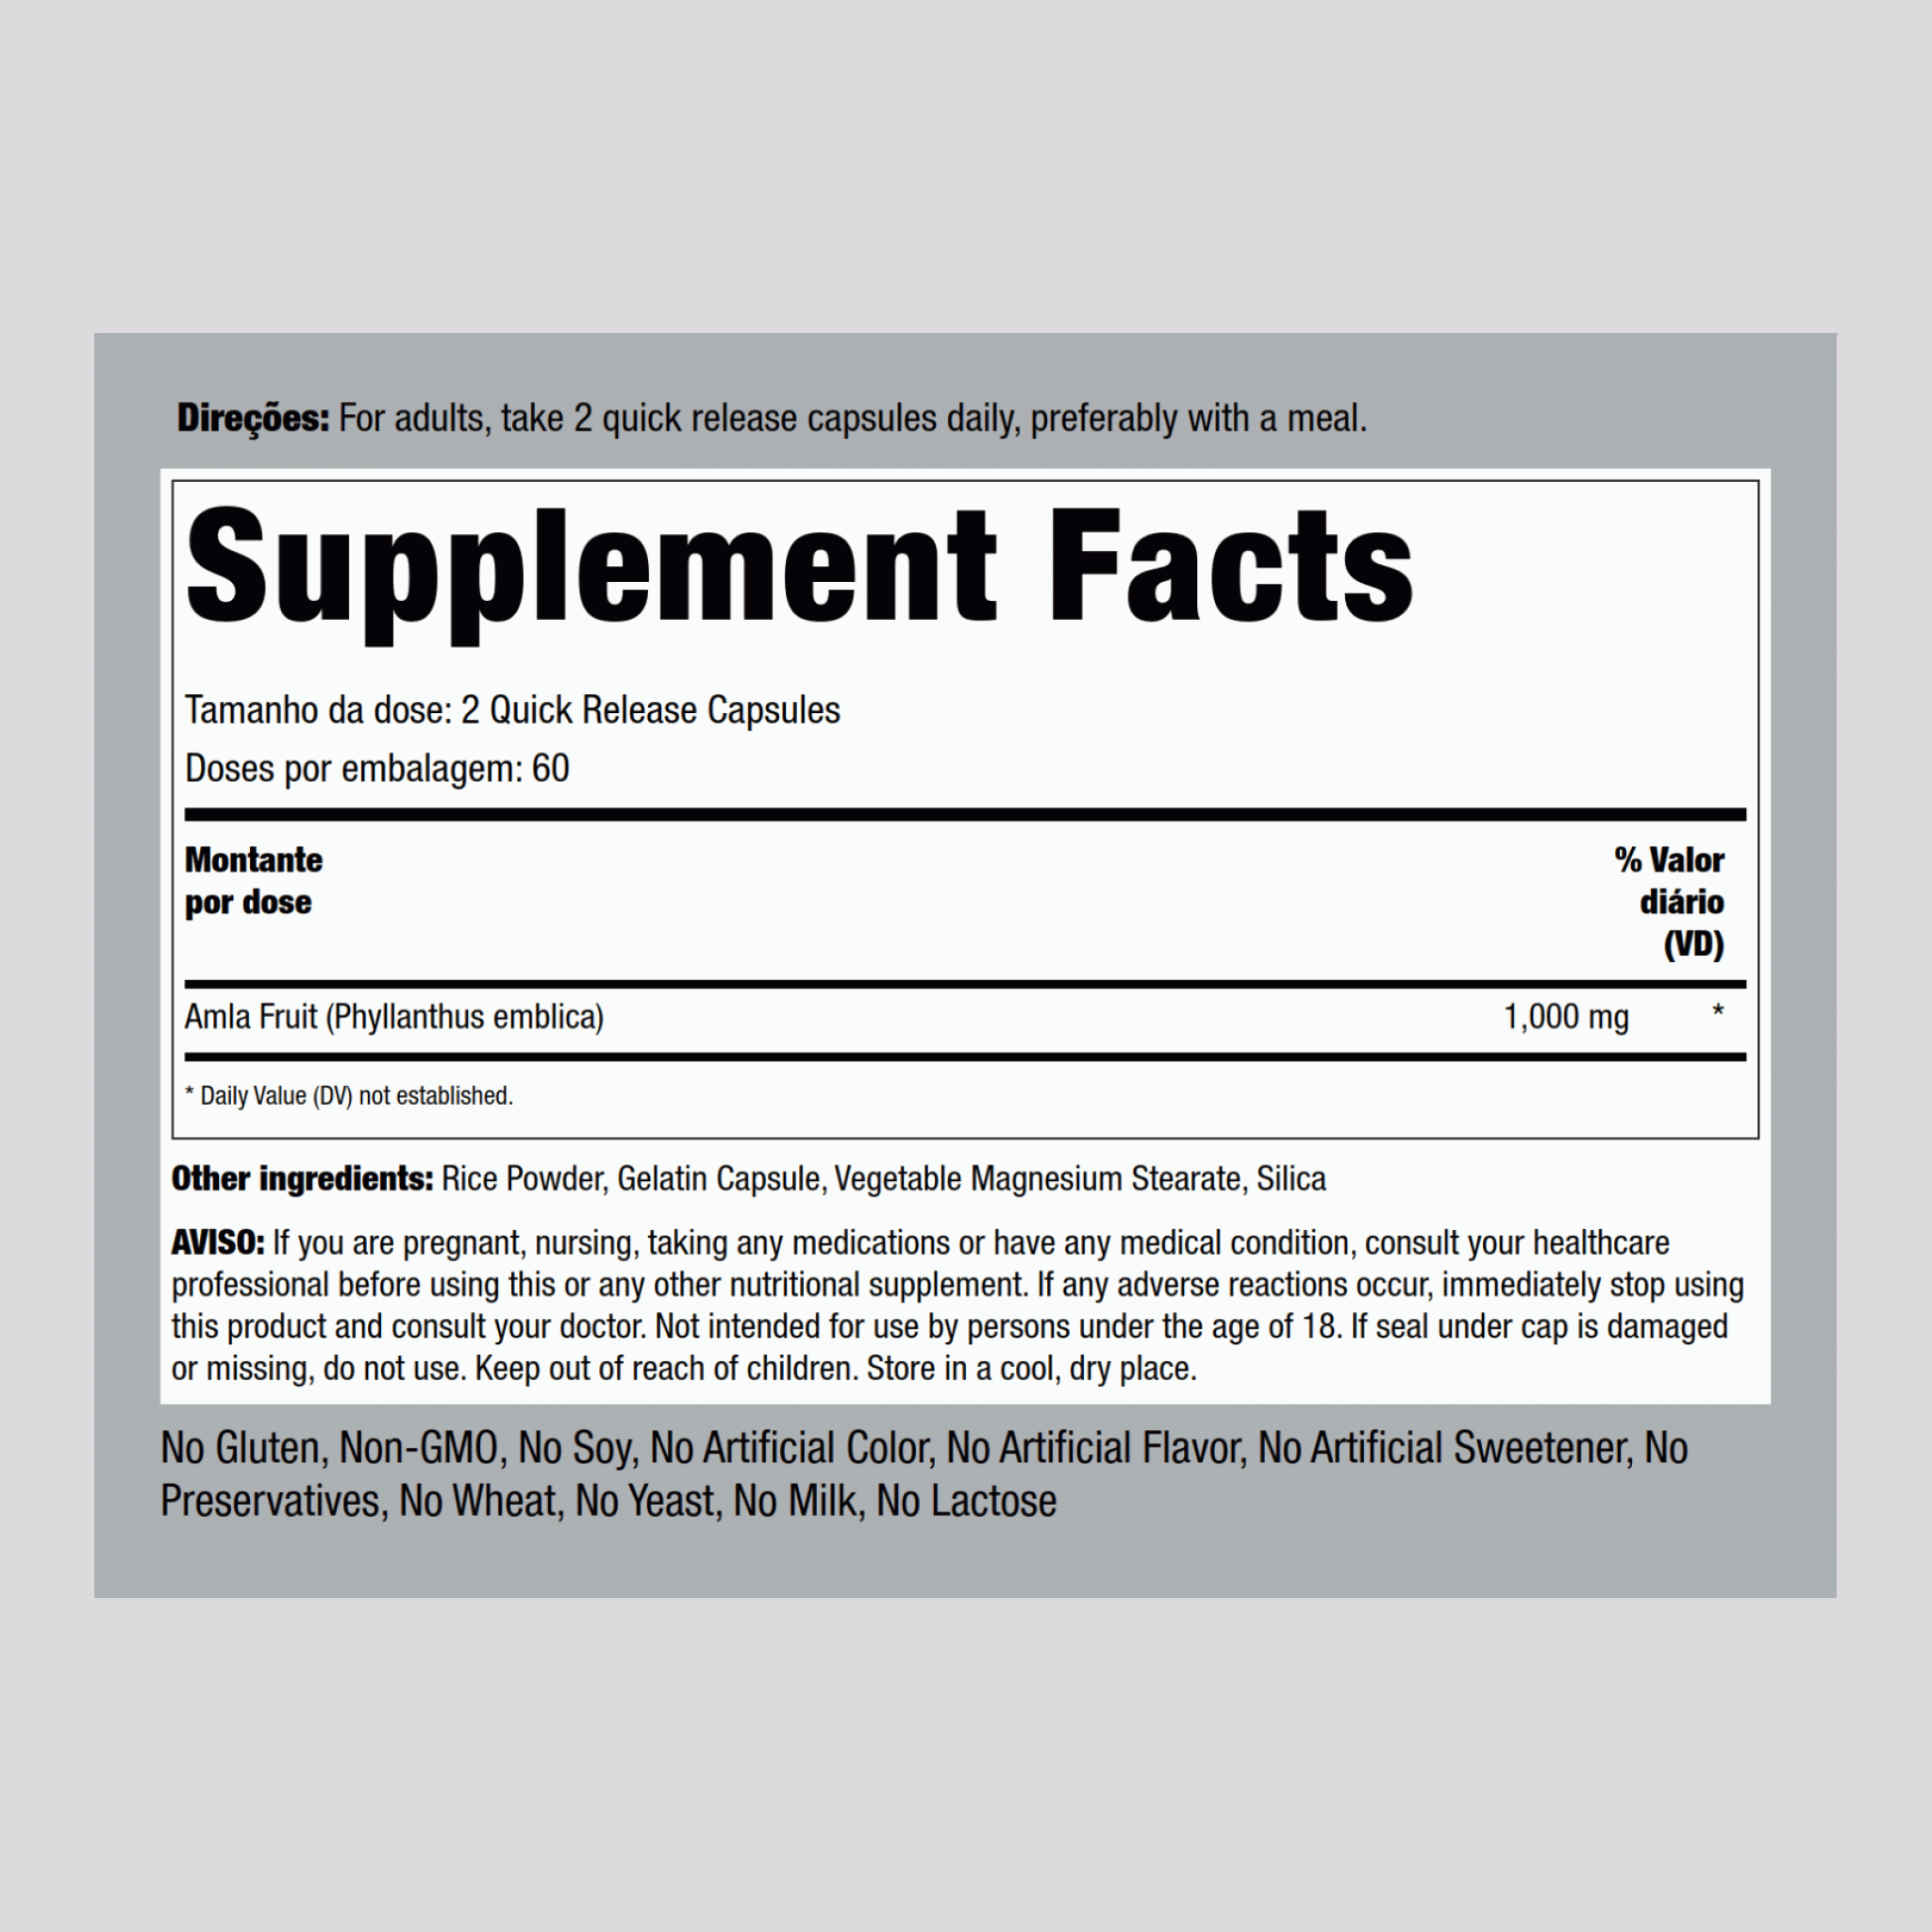 Amla (groselha indiana) 1,000 mg (por dose) 120 Cápsulas de Rápida Absorção     